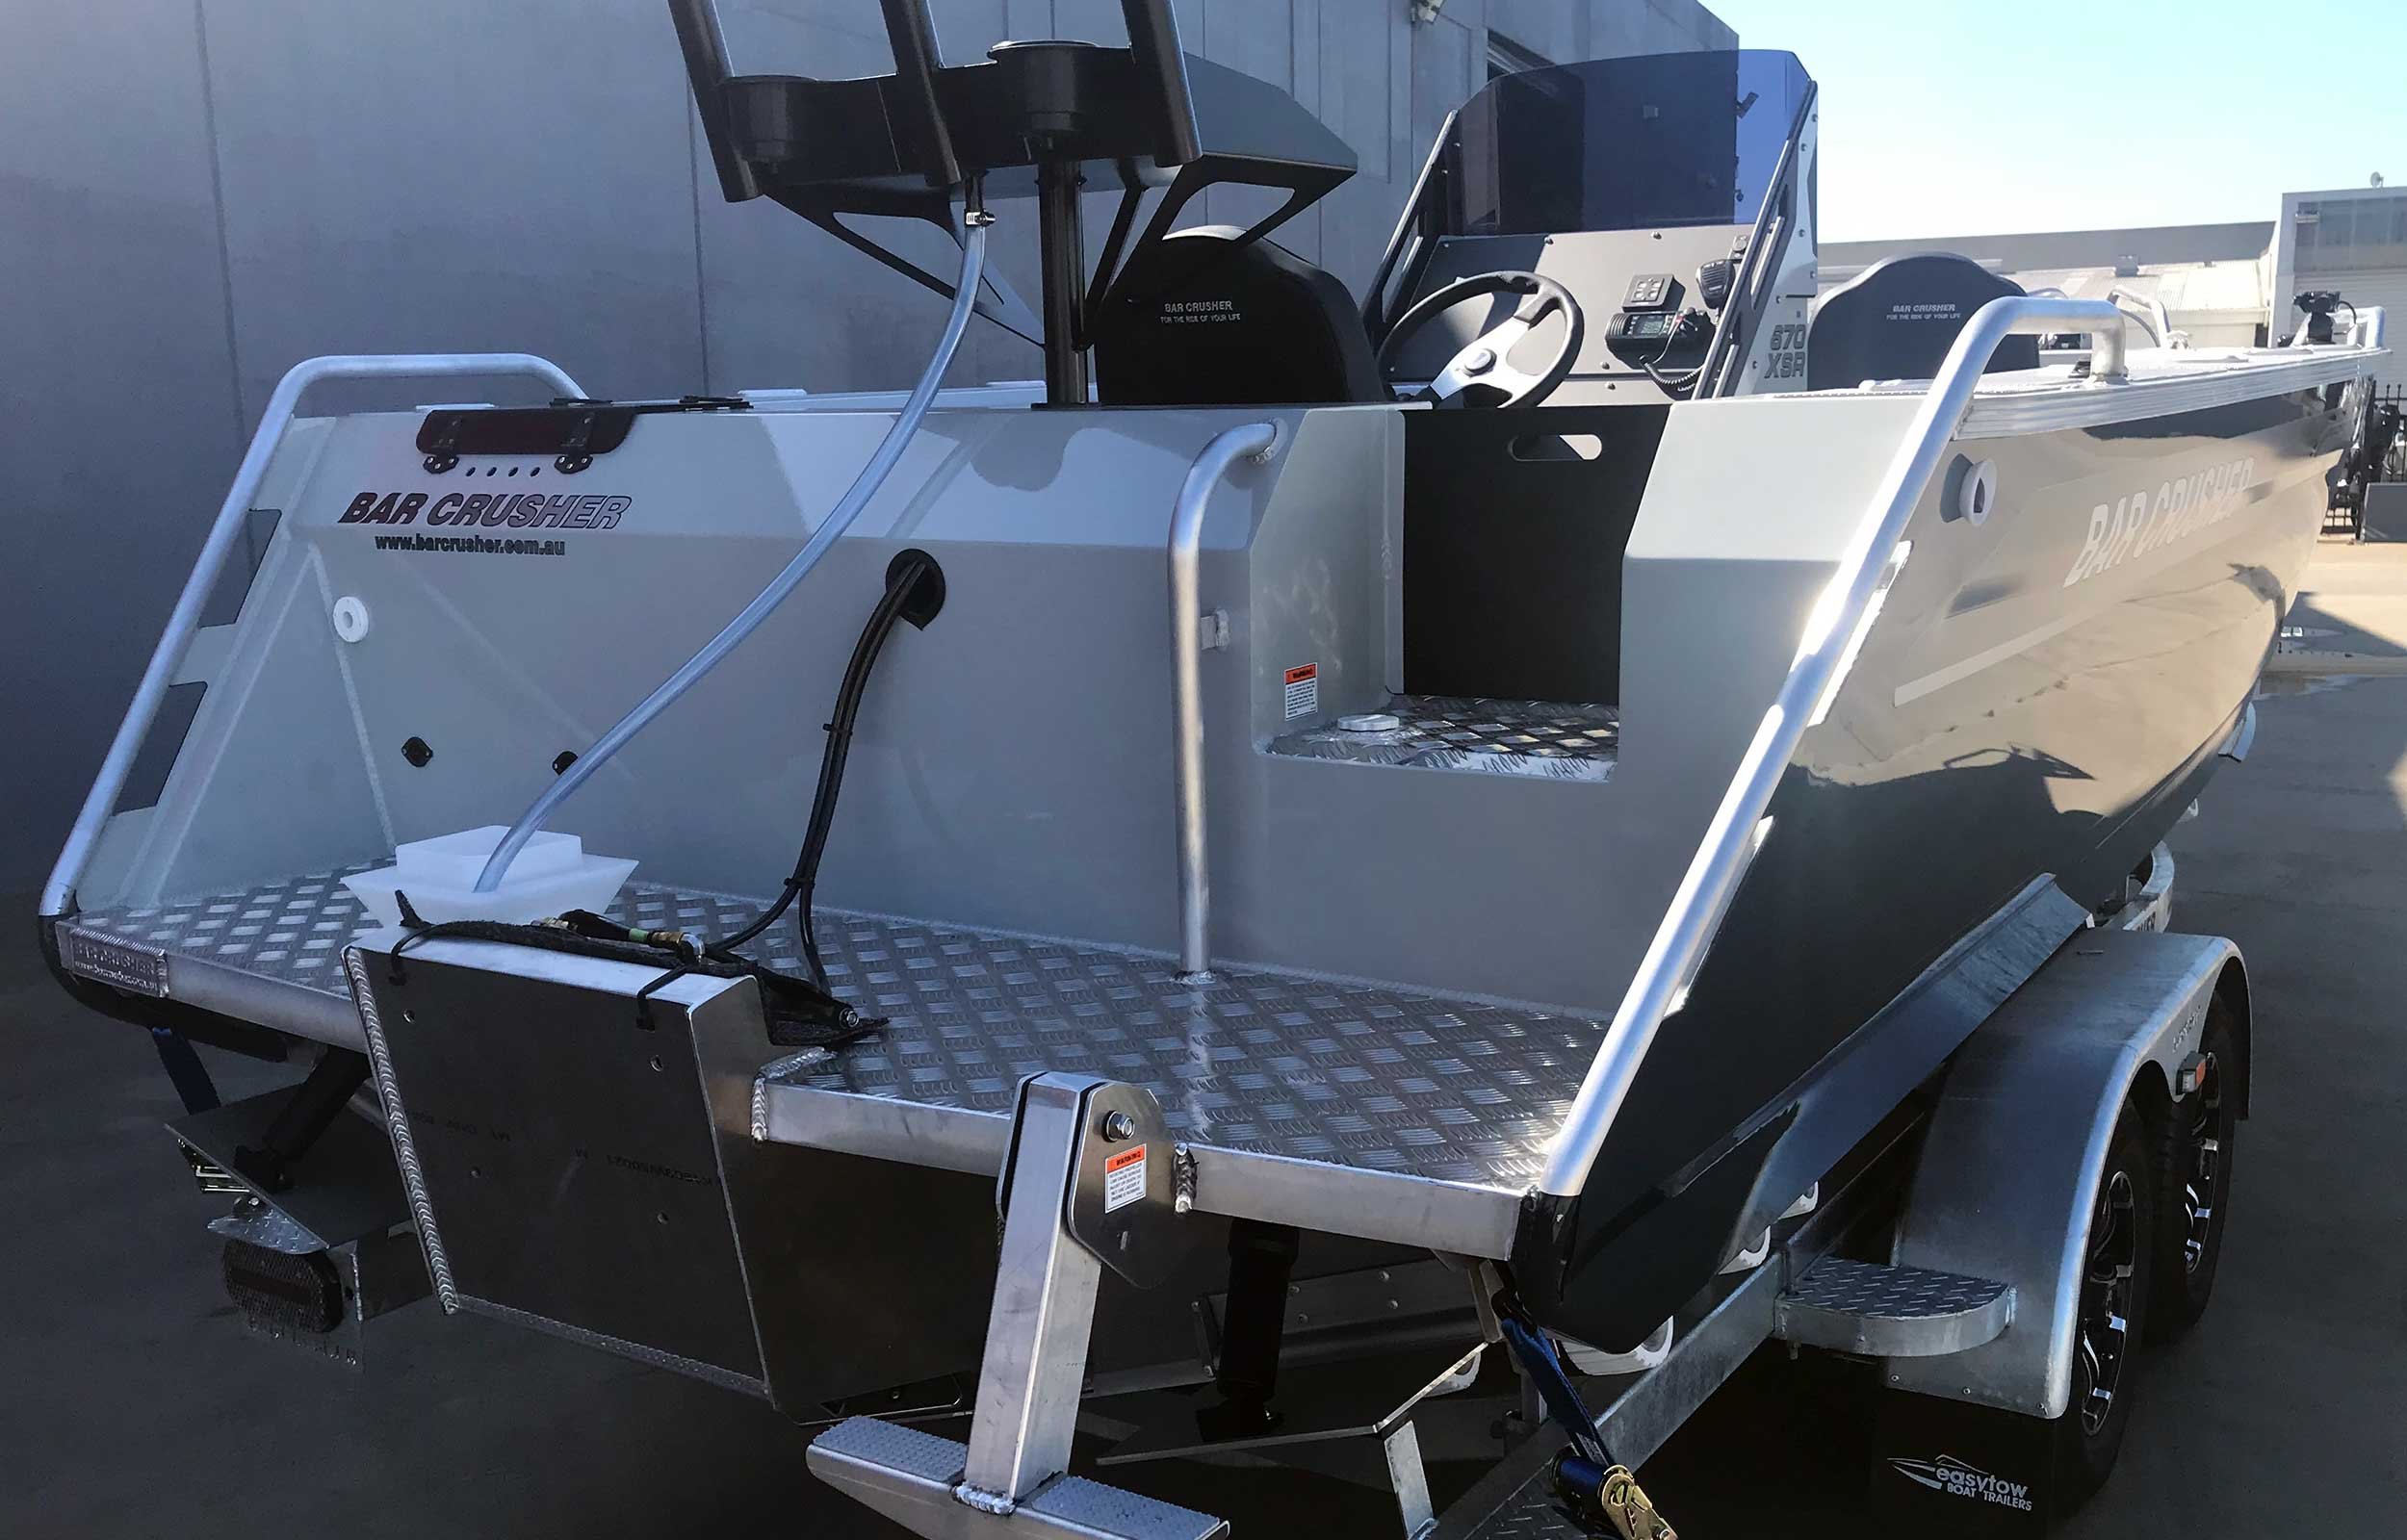 Models Bar Crusher 670xsr Plate Aluminium Fishing Boat 2020 Web 9